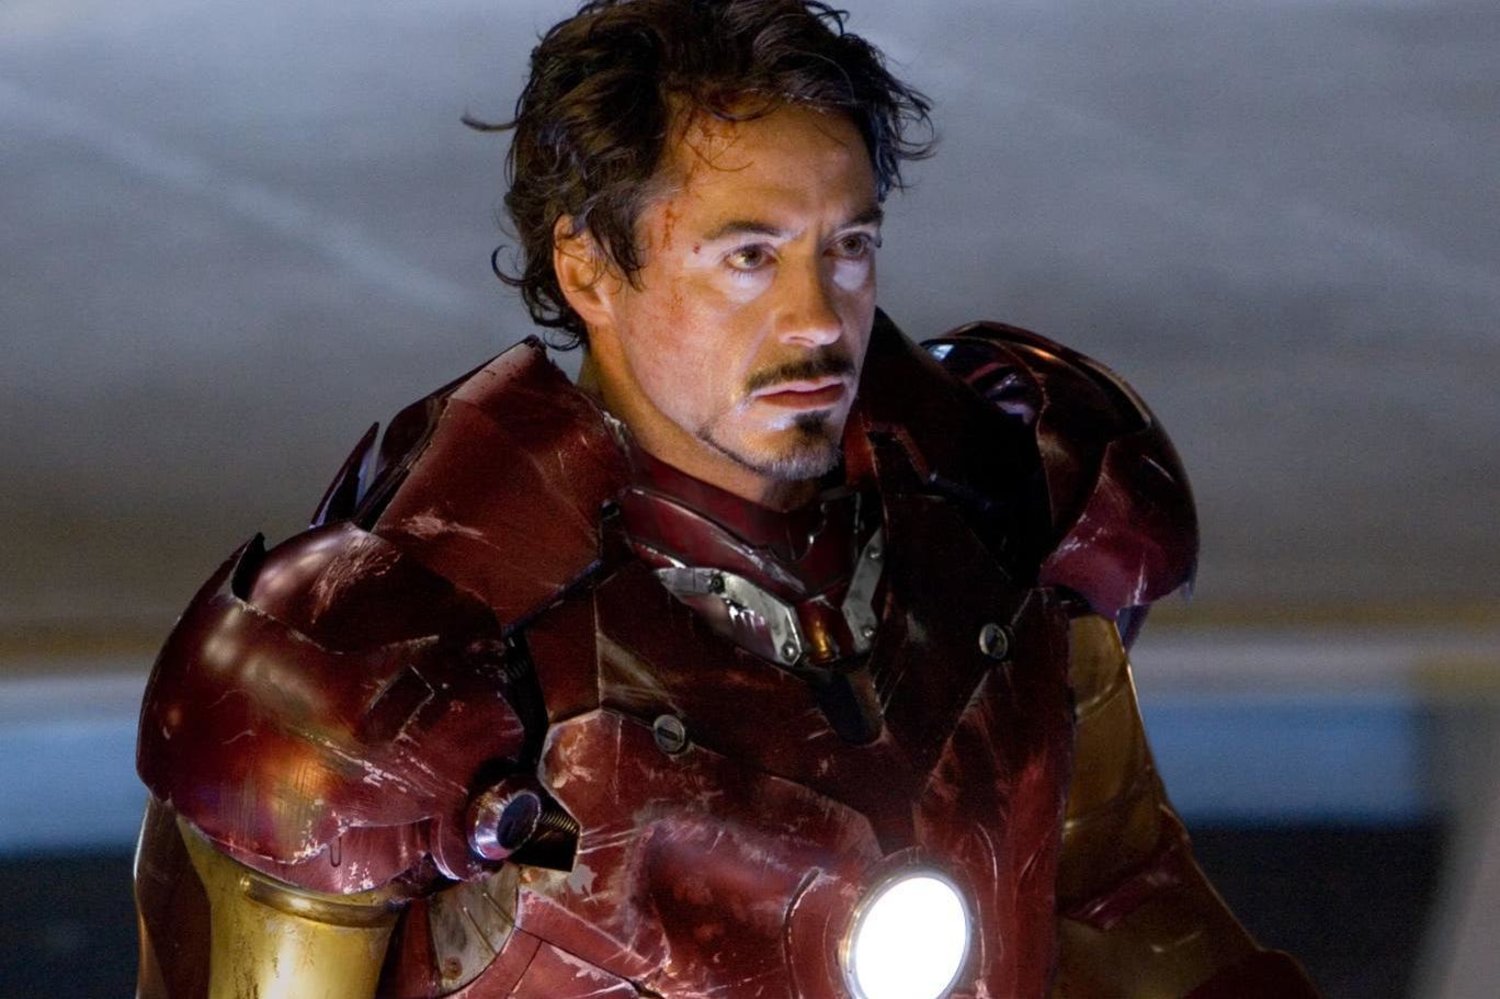 İlk Iron Man, 2008'de gösterime girmişti (Zade Rosenthal/ Marvel)